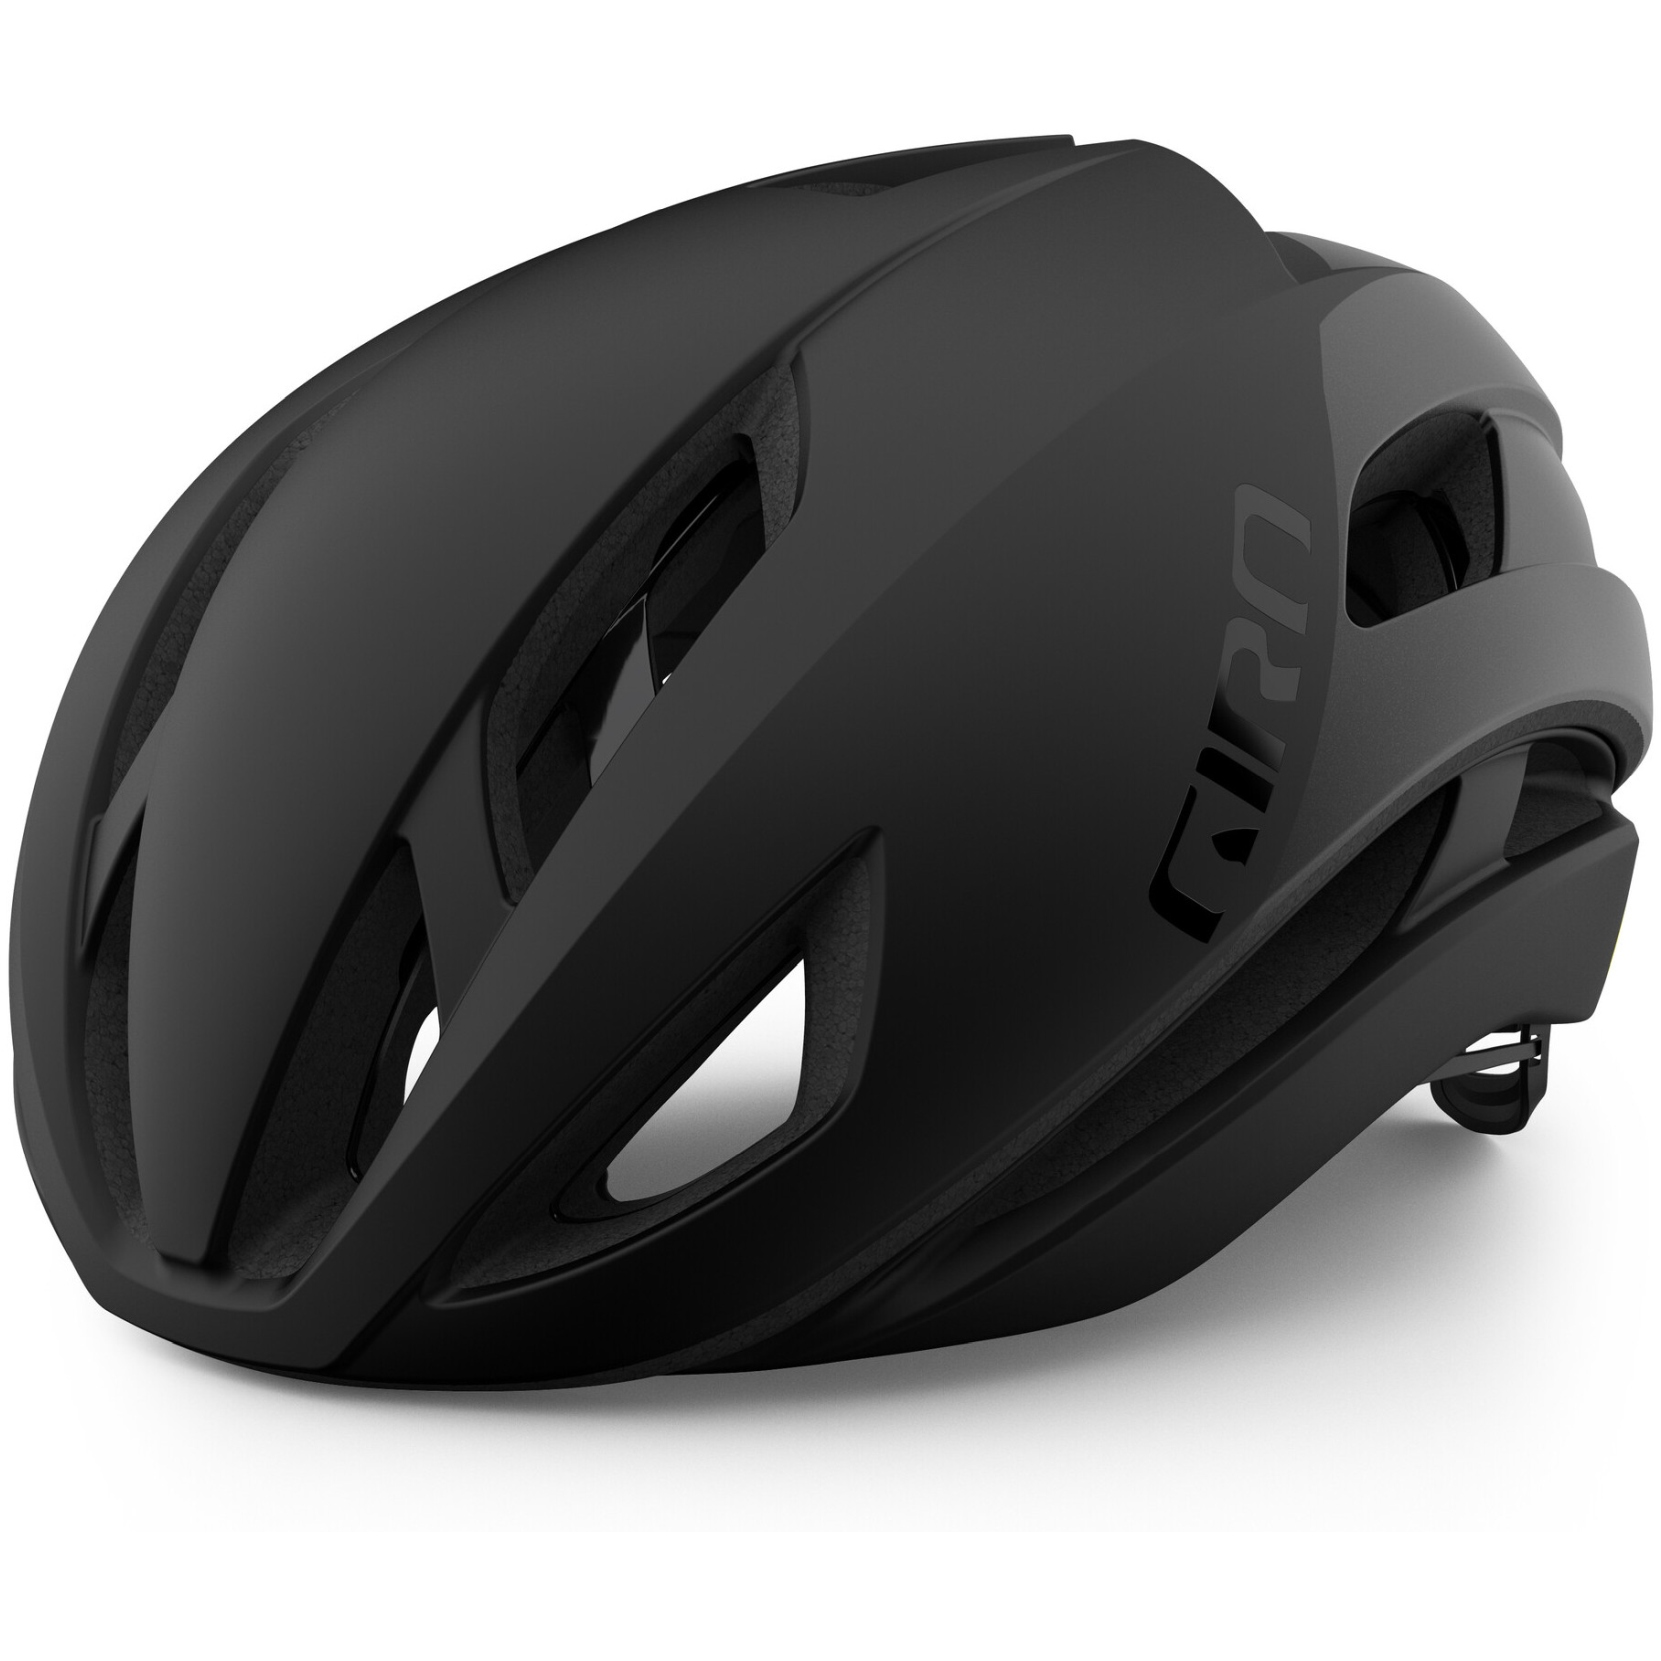 Produktbild von Giro Eclipse Spherical Helm - matte black/gloss black